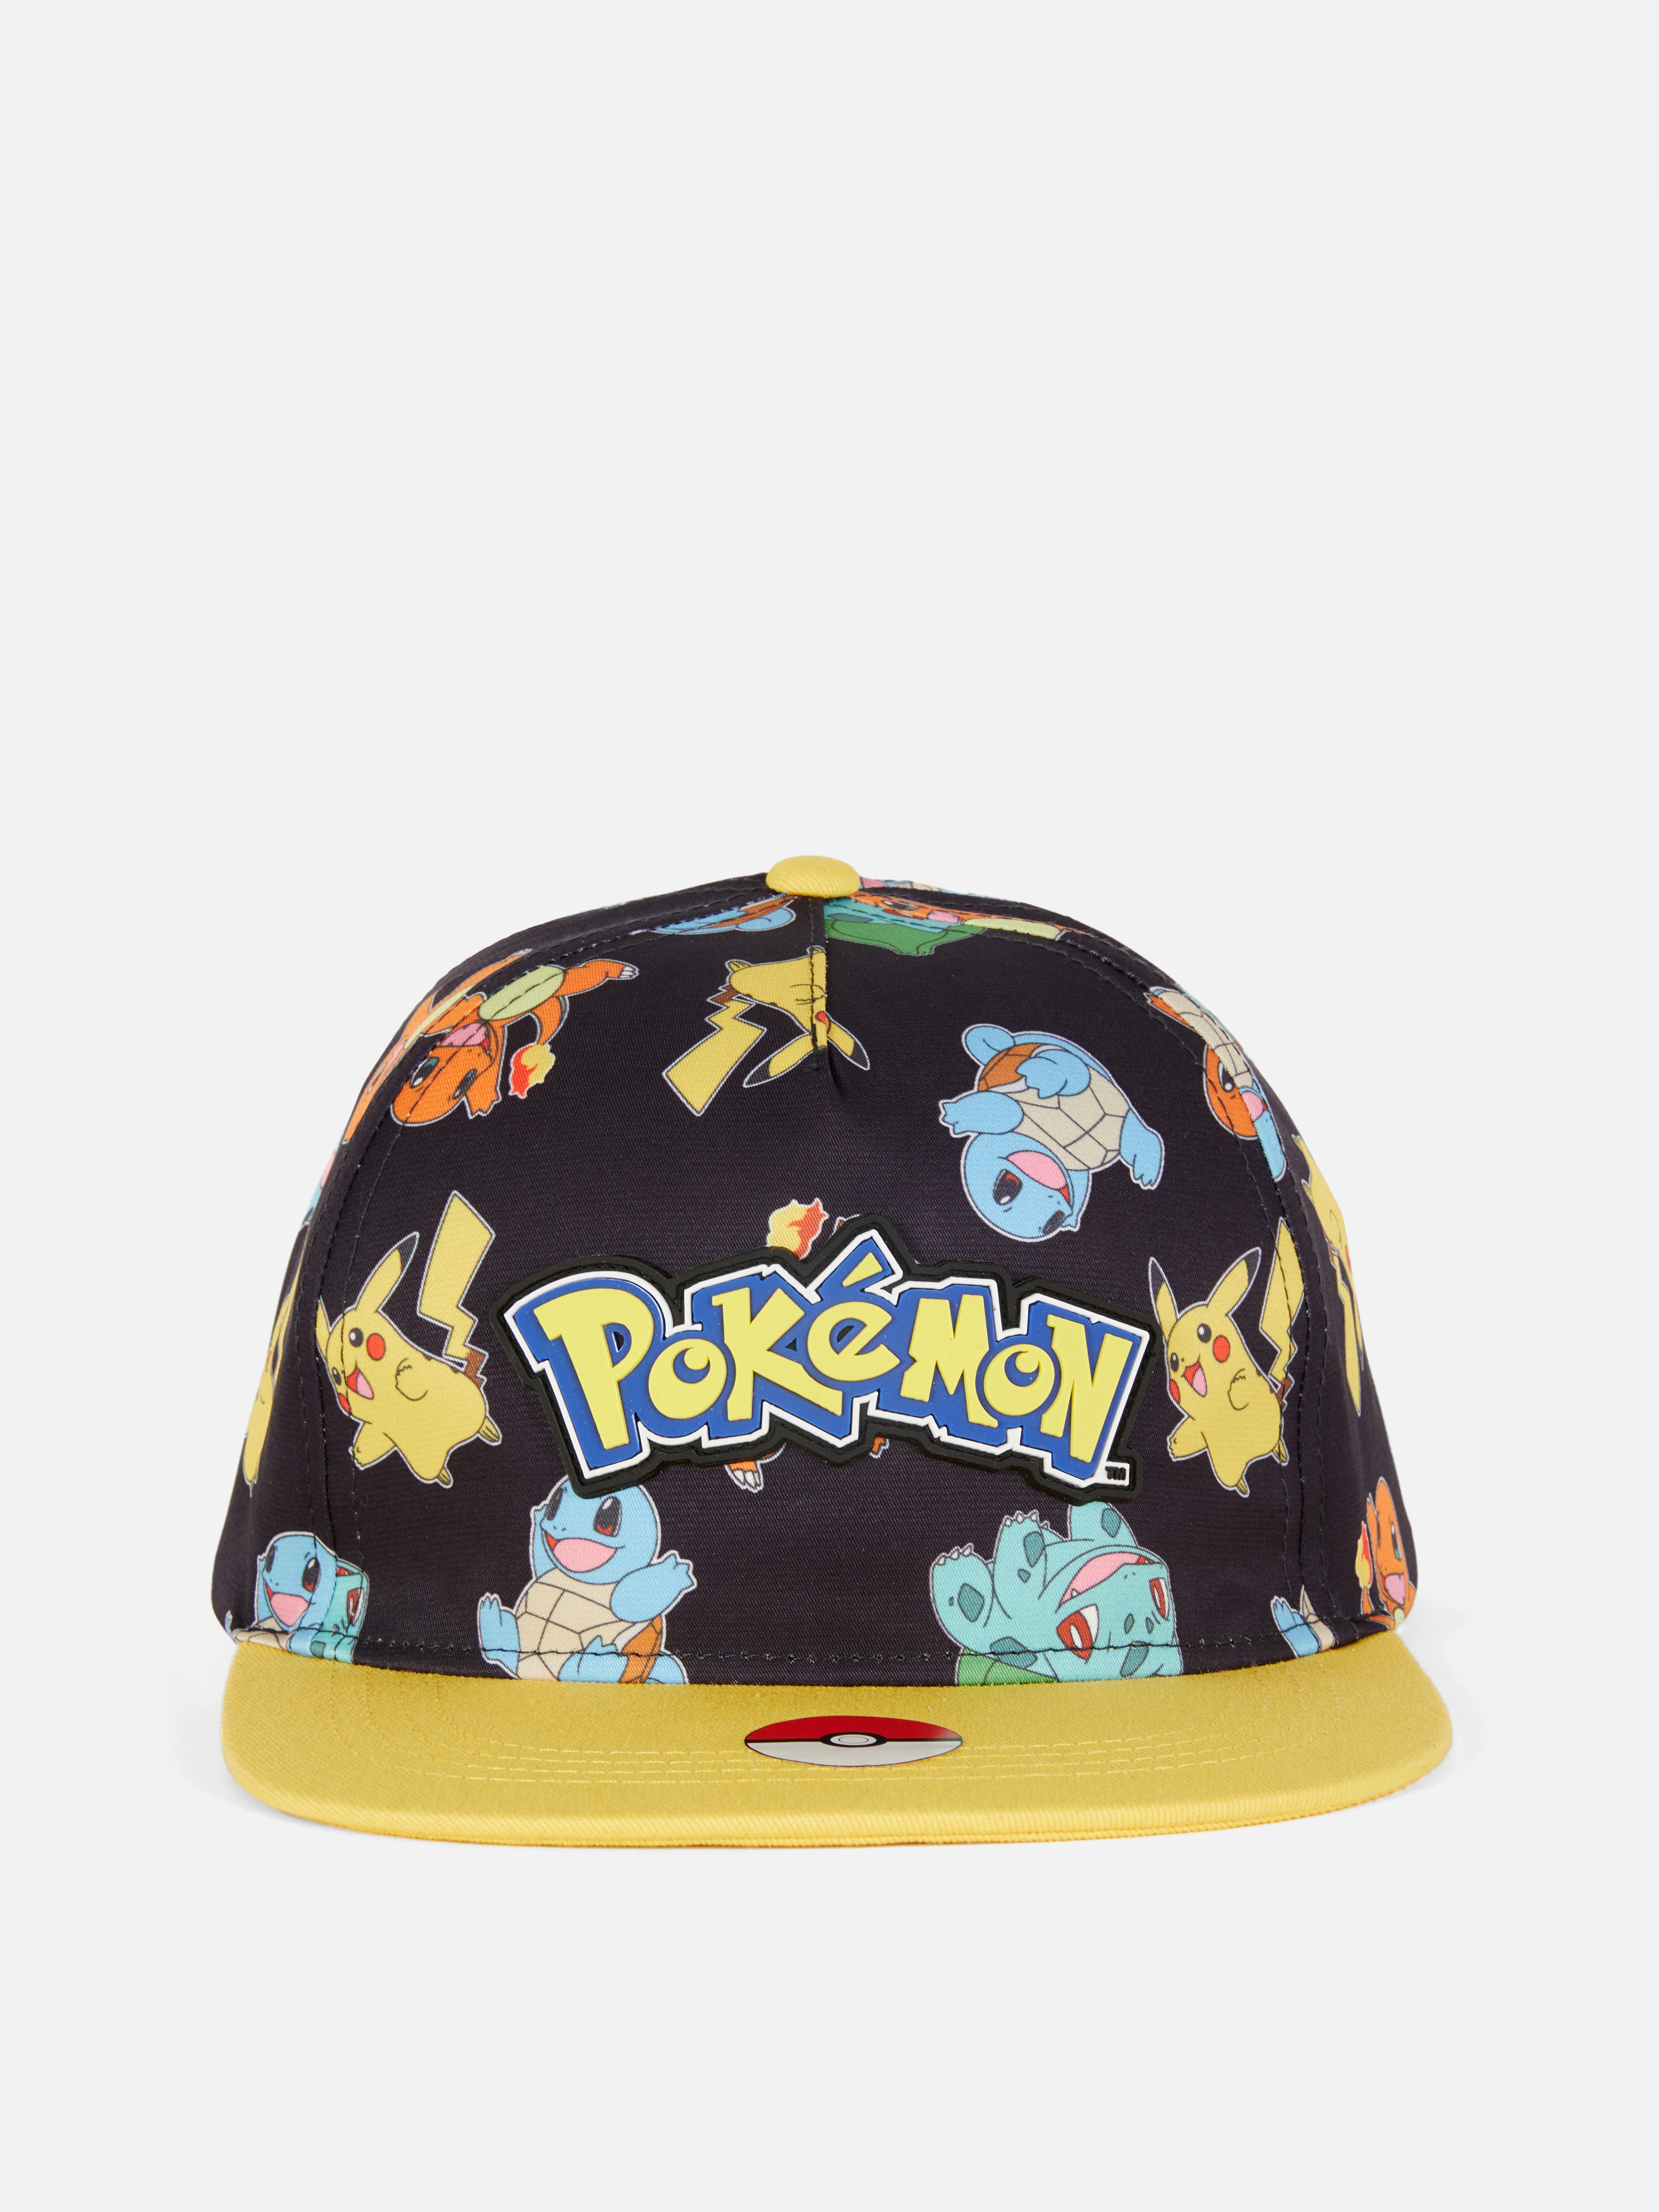 „Pokémon Pokéball“ Basecap